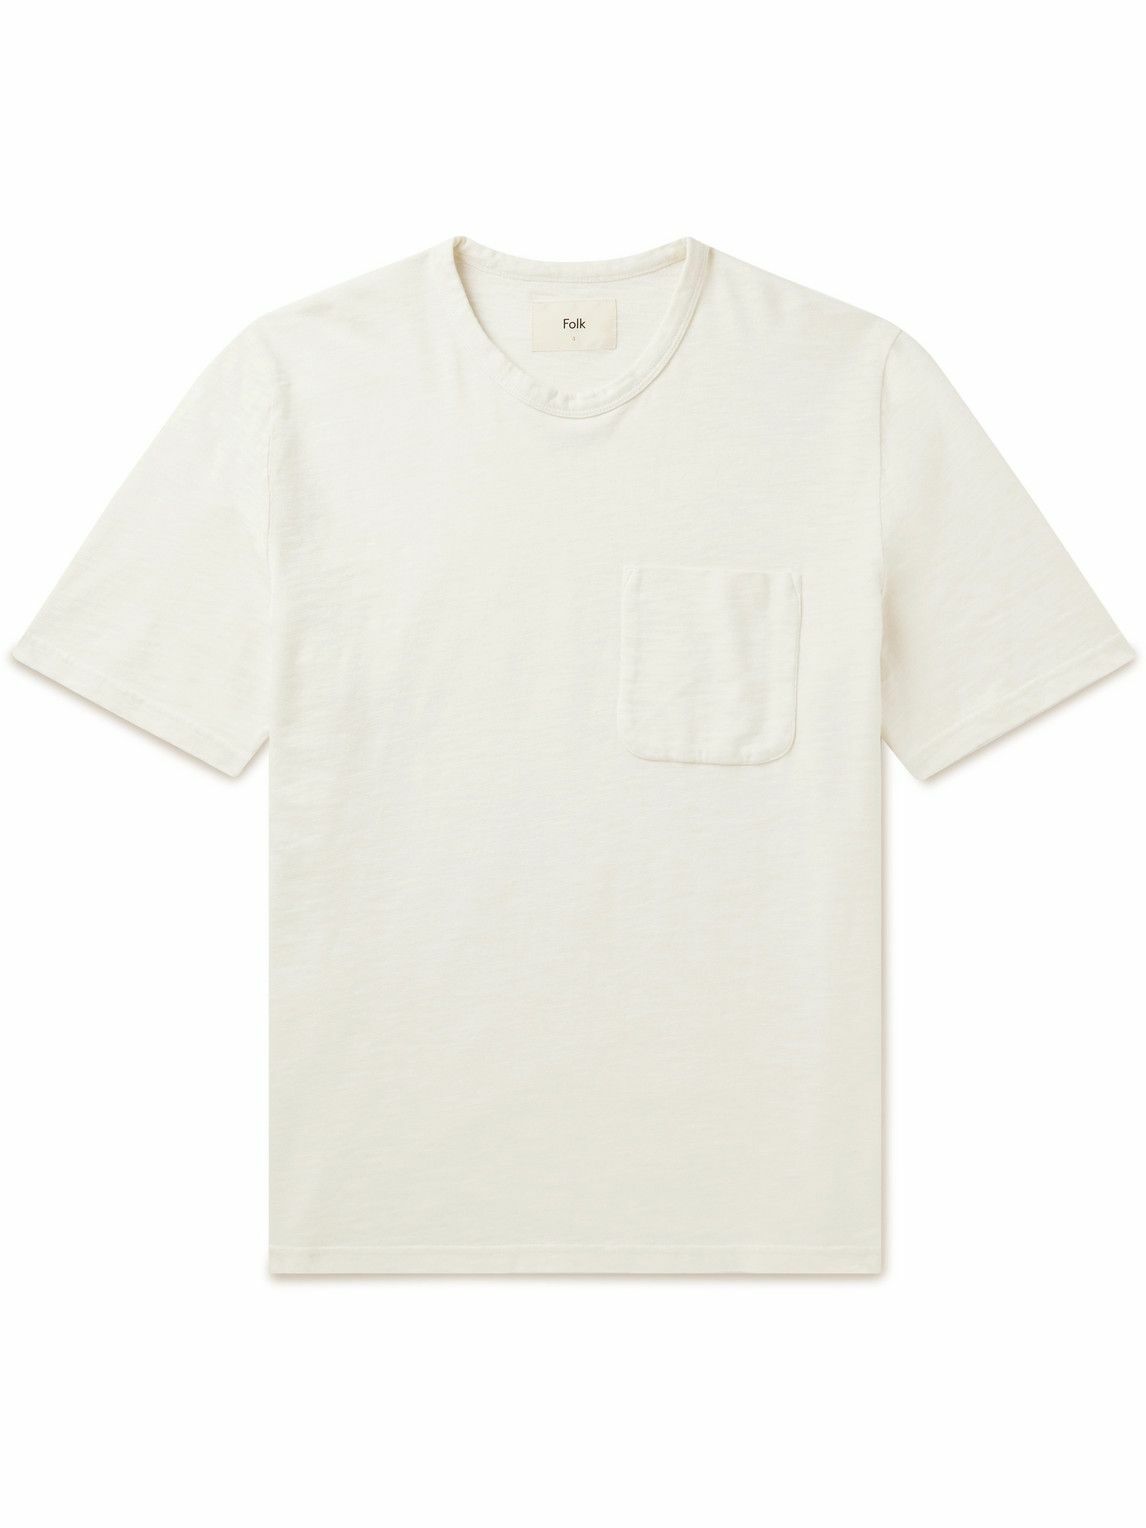 Folk - Slub Cotton-Jersey T-Shirt - White Folk